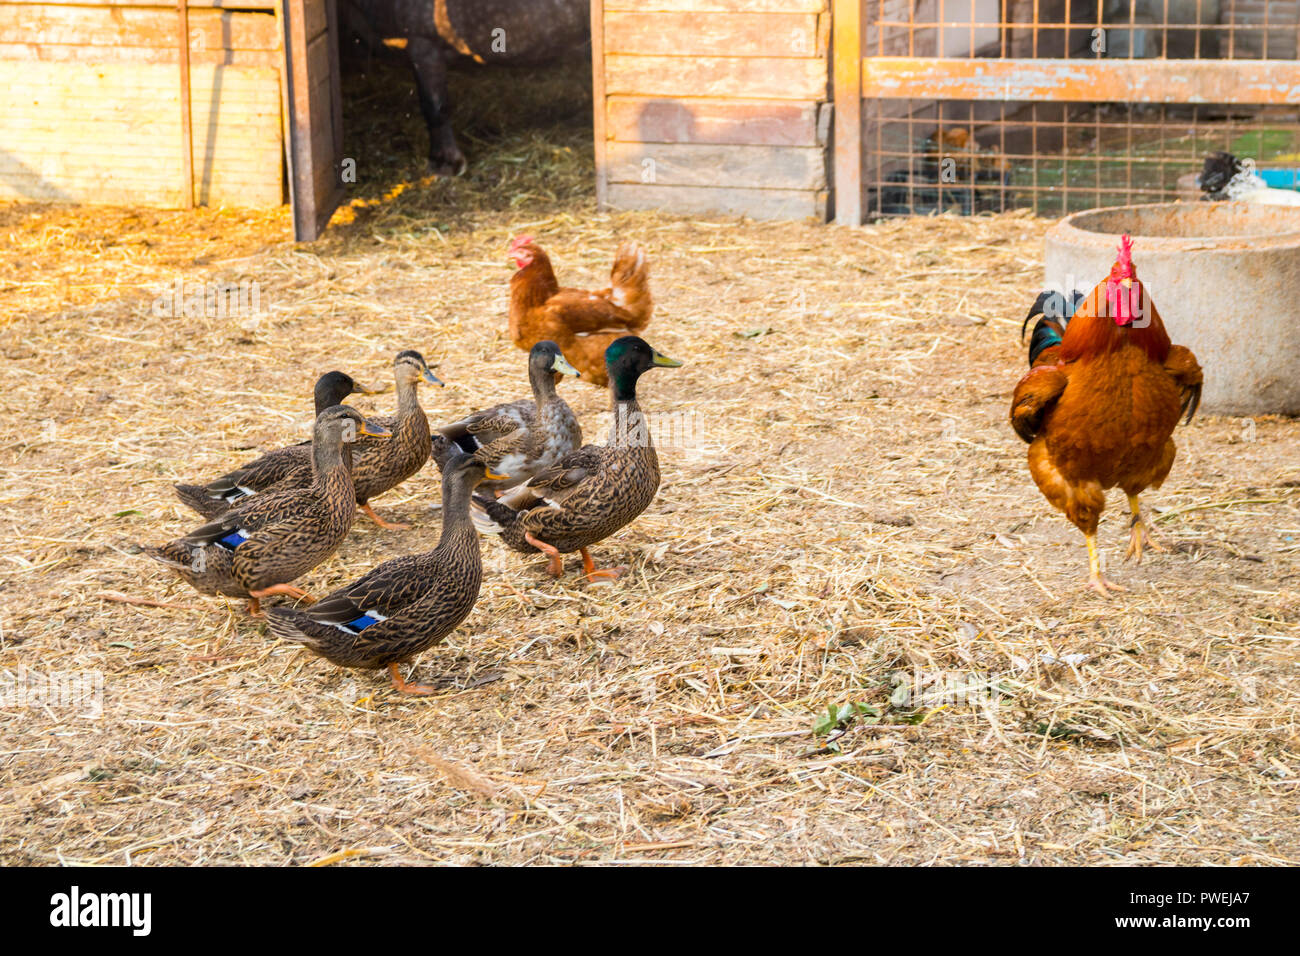 Canards, poulets, poules, oiseaux de basse-cour, un stylo, une ferme, un concept d'agriculture Poulet canard, poule, animaux de ferme, concept rural, Italie Banque D'Images